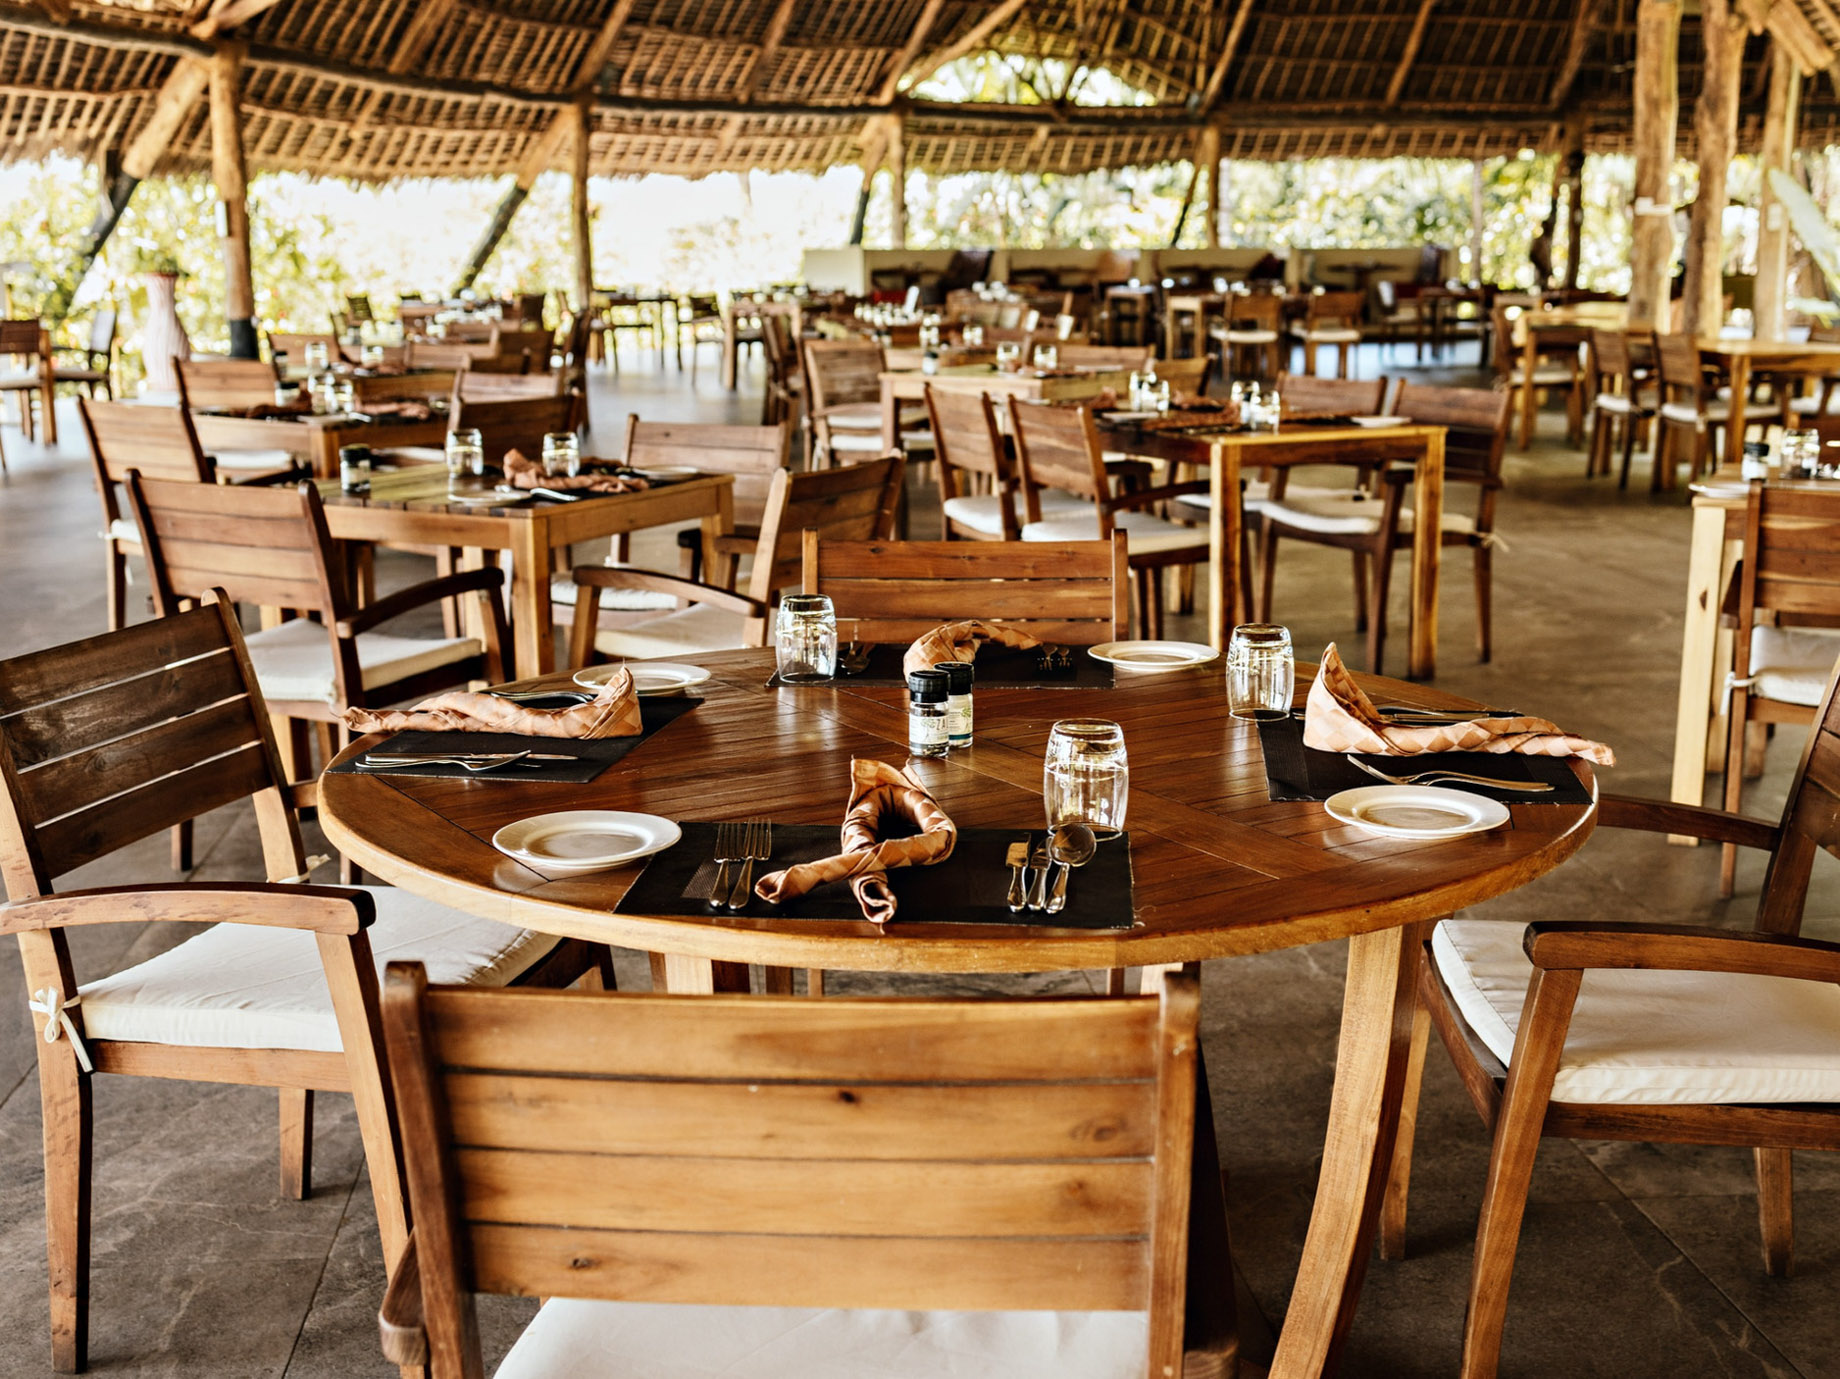 Gold Zanzibar Beach House & Spa Resort - Nungwi, Zanzibar, Tanzania - Kilimanjaro Restaurant Dining